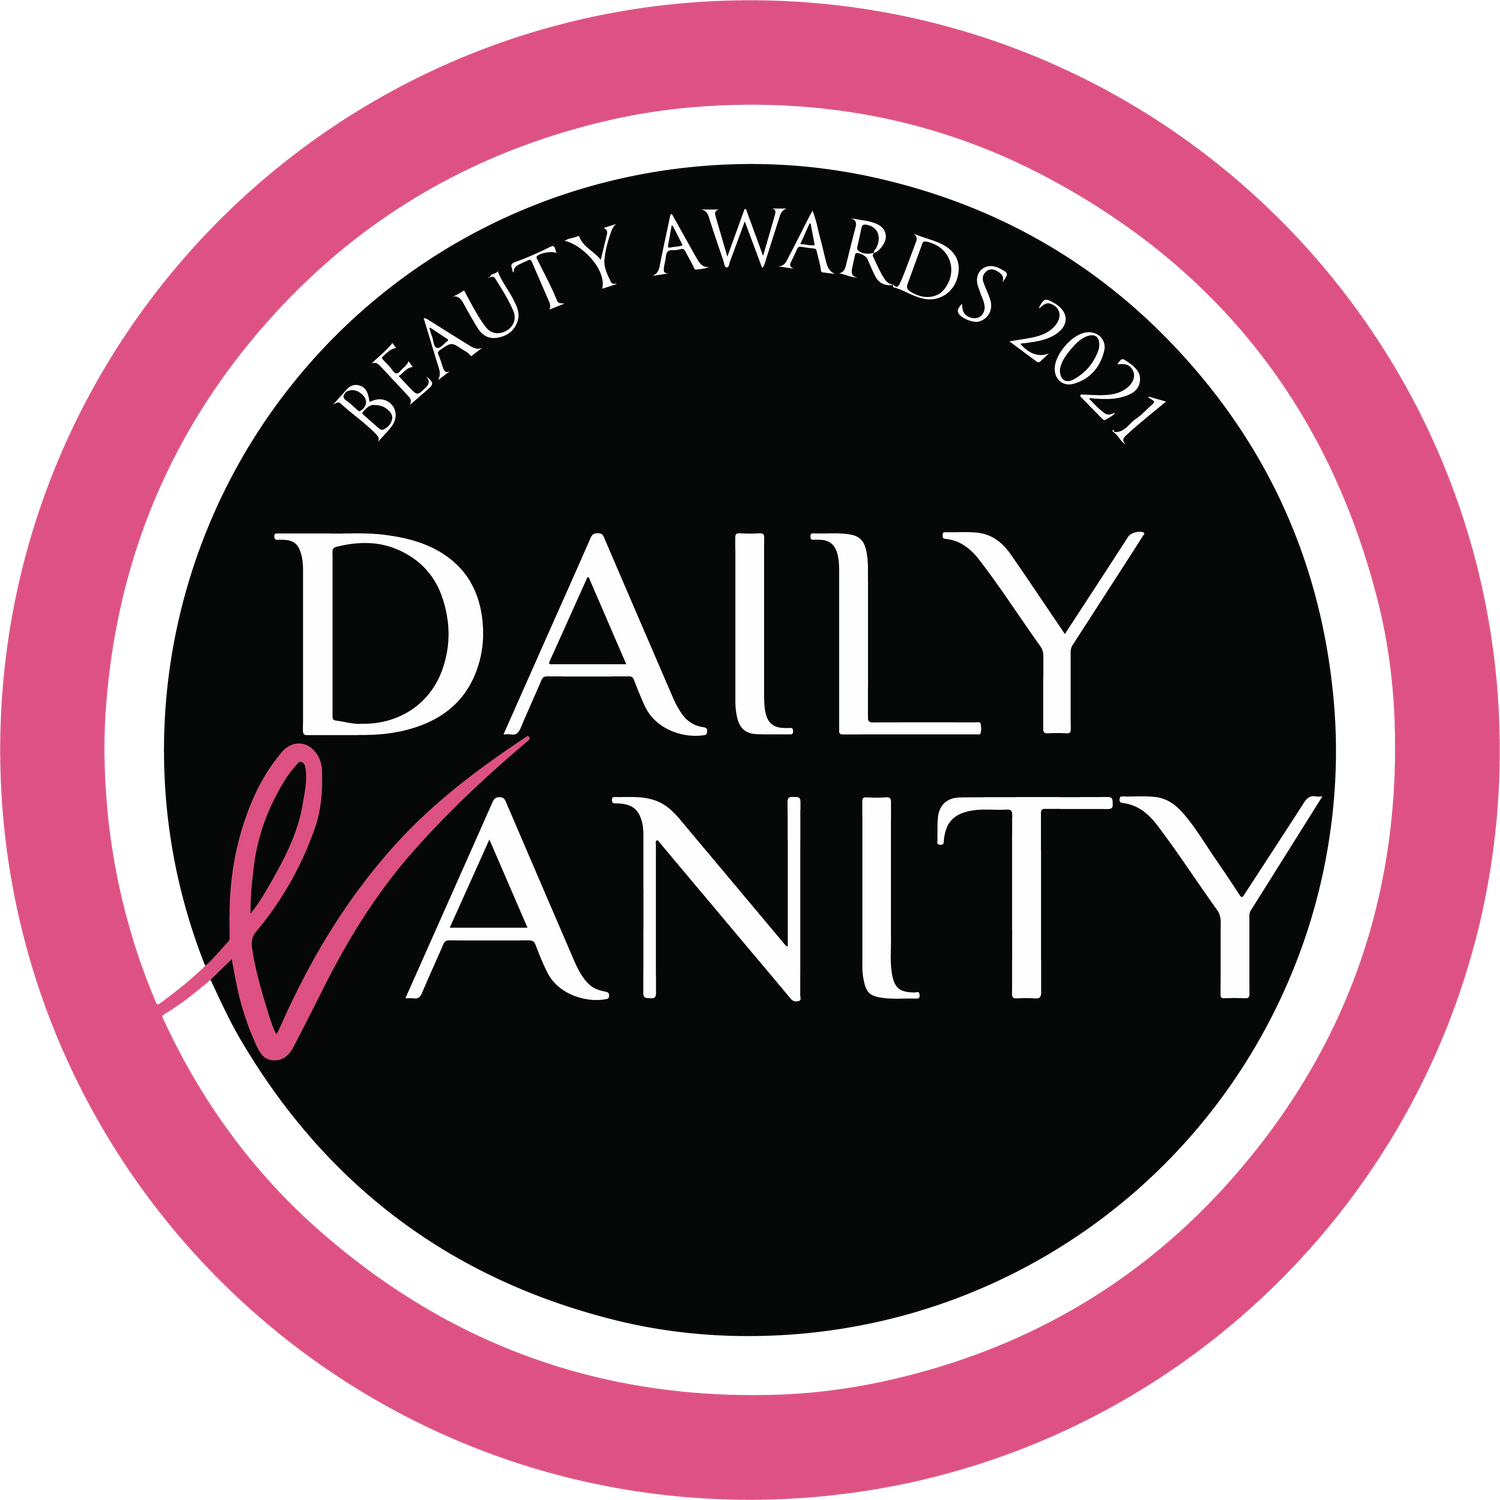 Daily Vanity Award